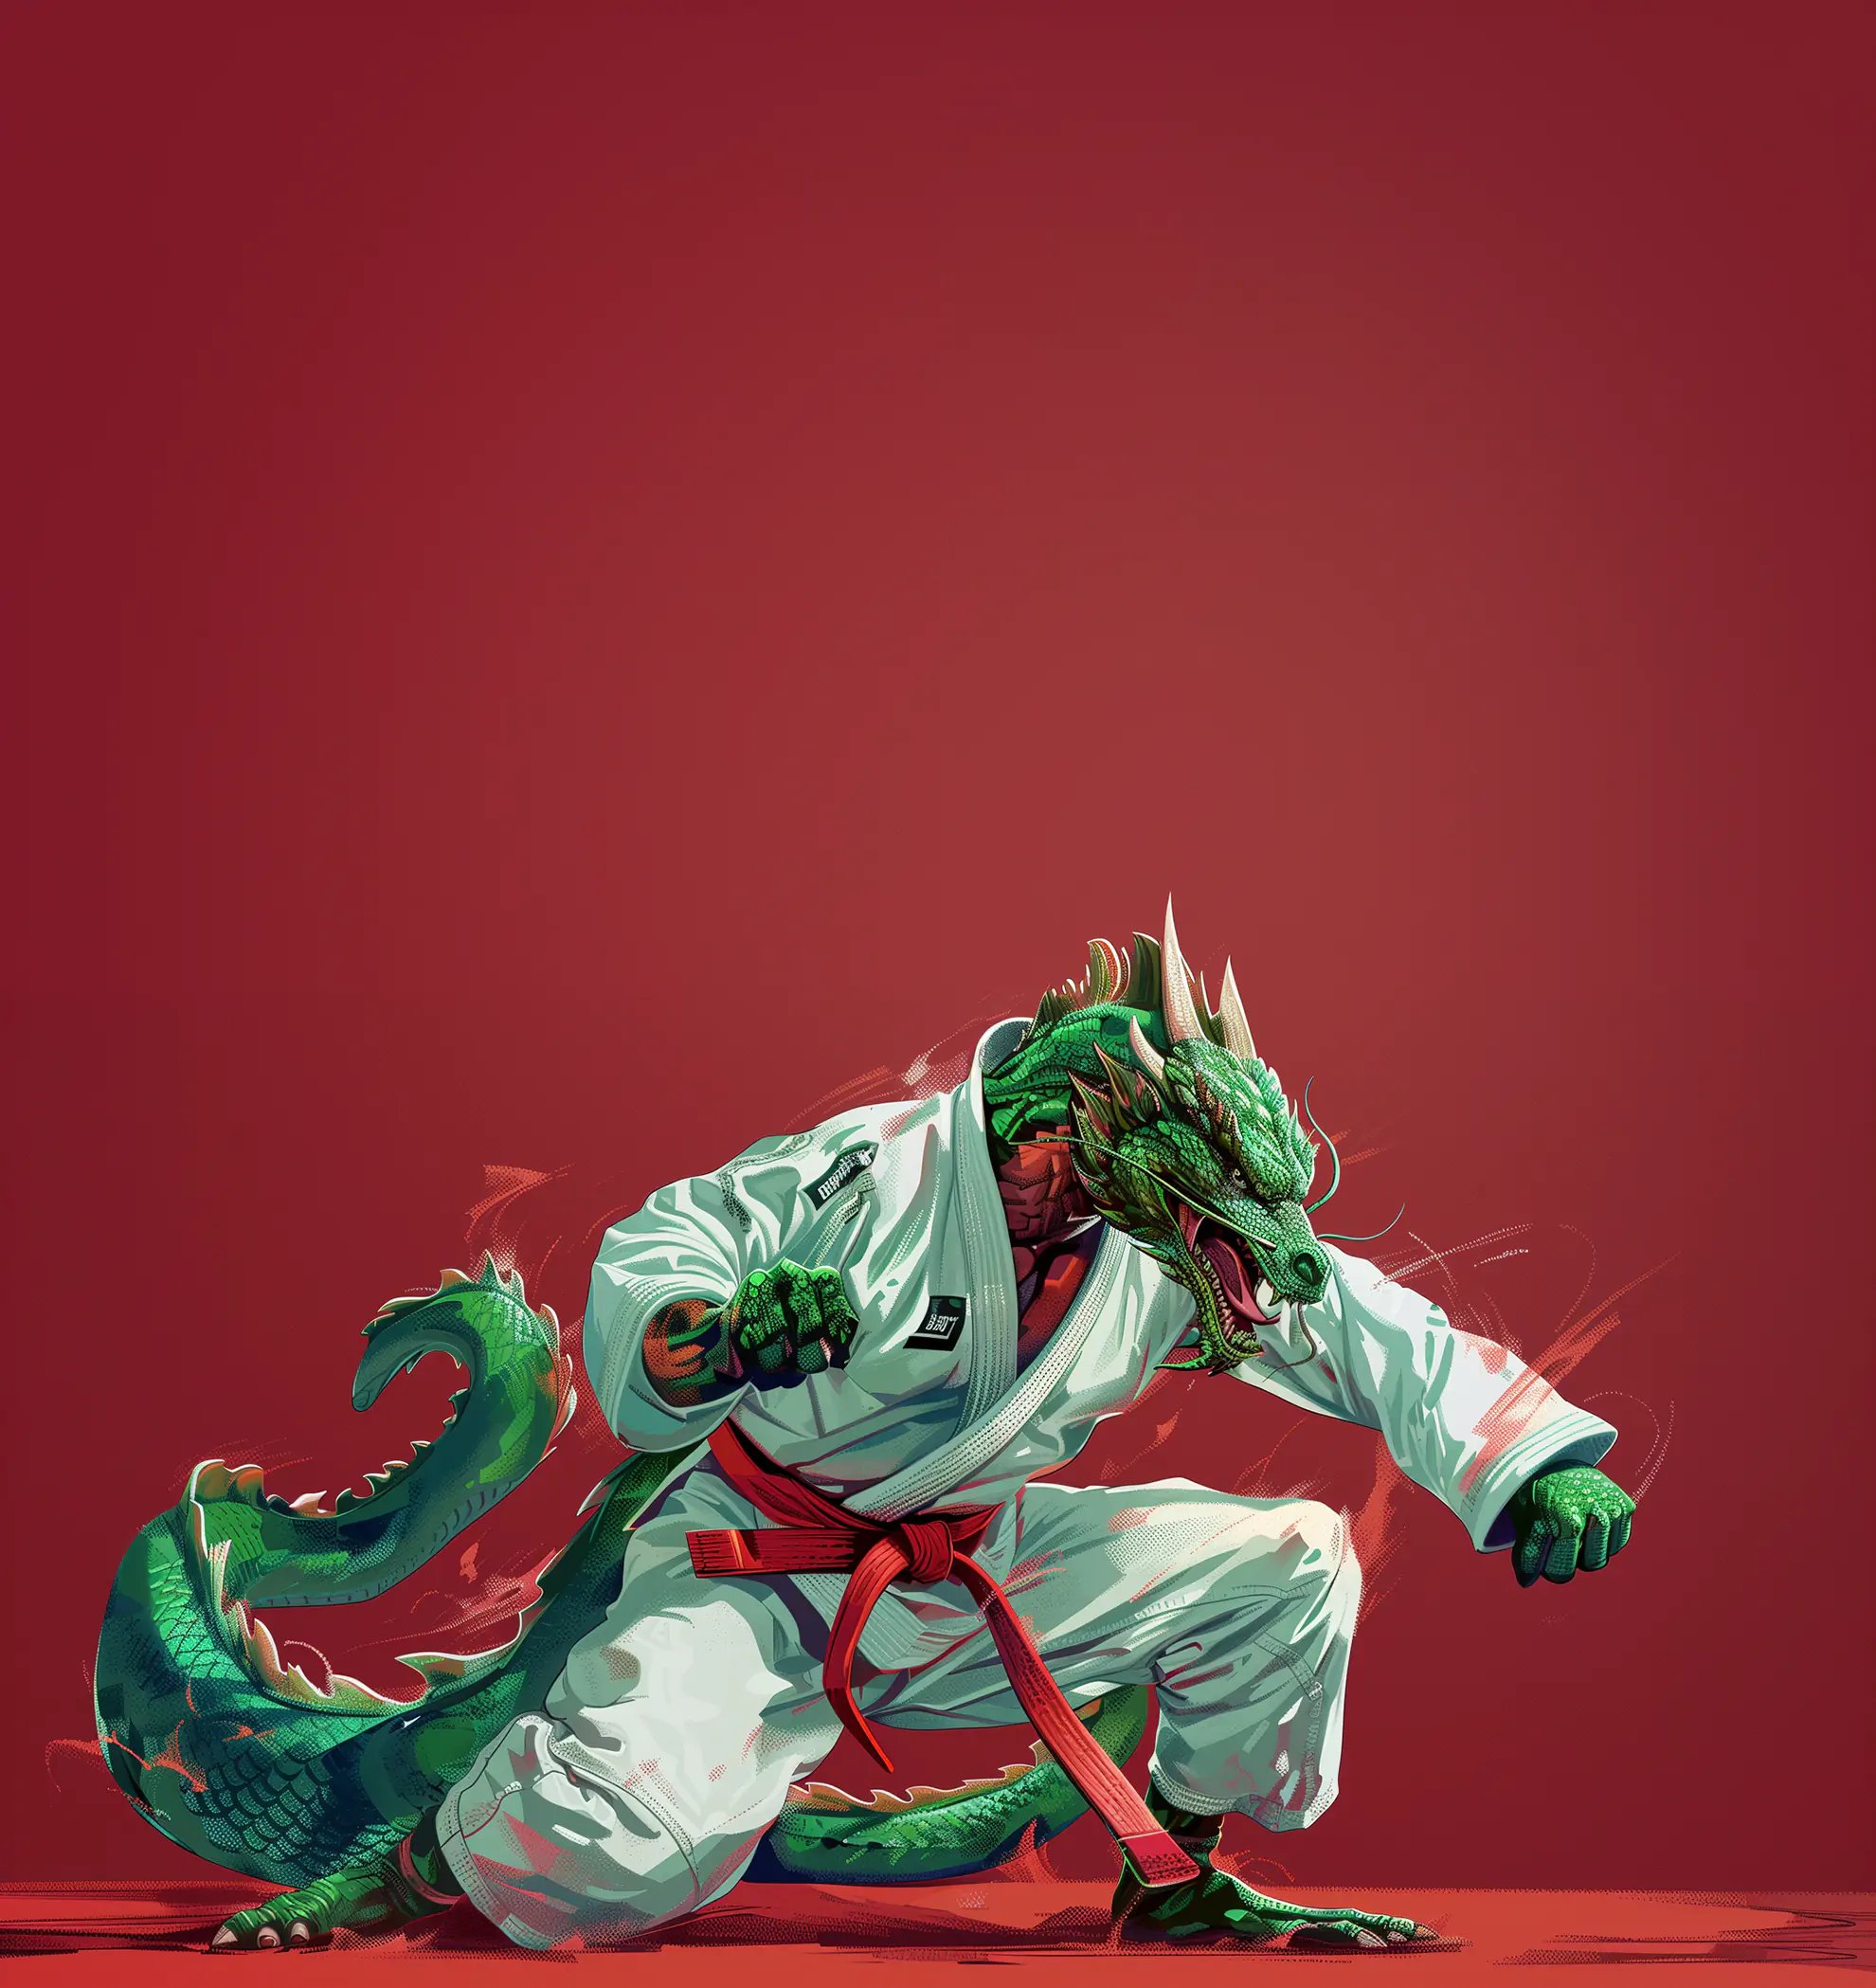 Иллюстрация дракона, стоящего в стойке бразильского джиу-джитсу, в белом ги и красном поясе, символизирующего тренировки боевых искусств в спортзале Super Kick Gym в Бангкоке, заведении, предлагающем занятия по BJJ и другим боевым искусствам.